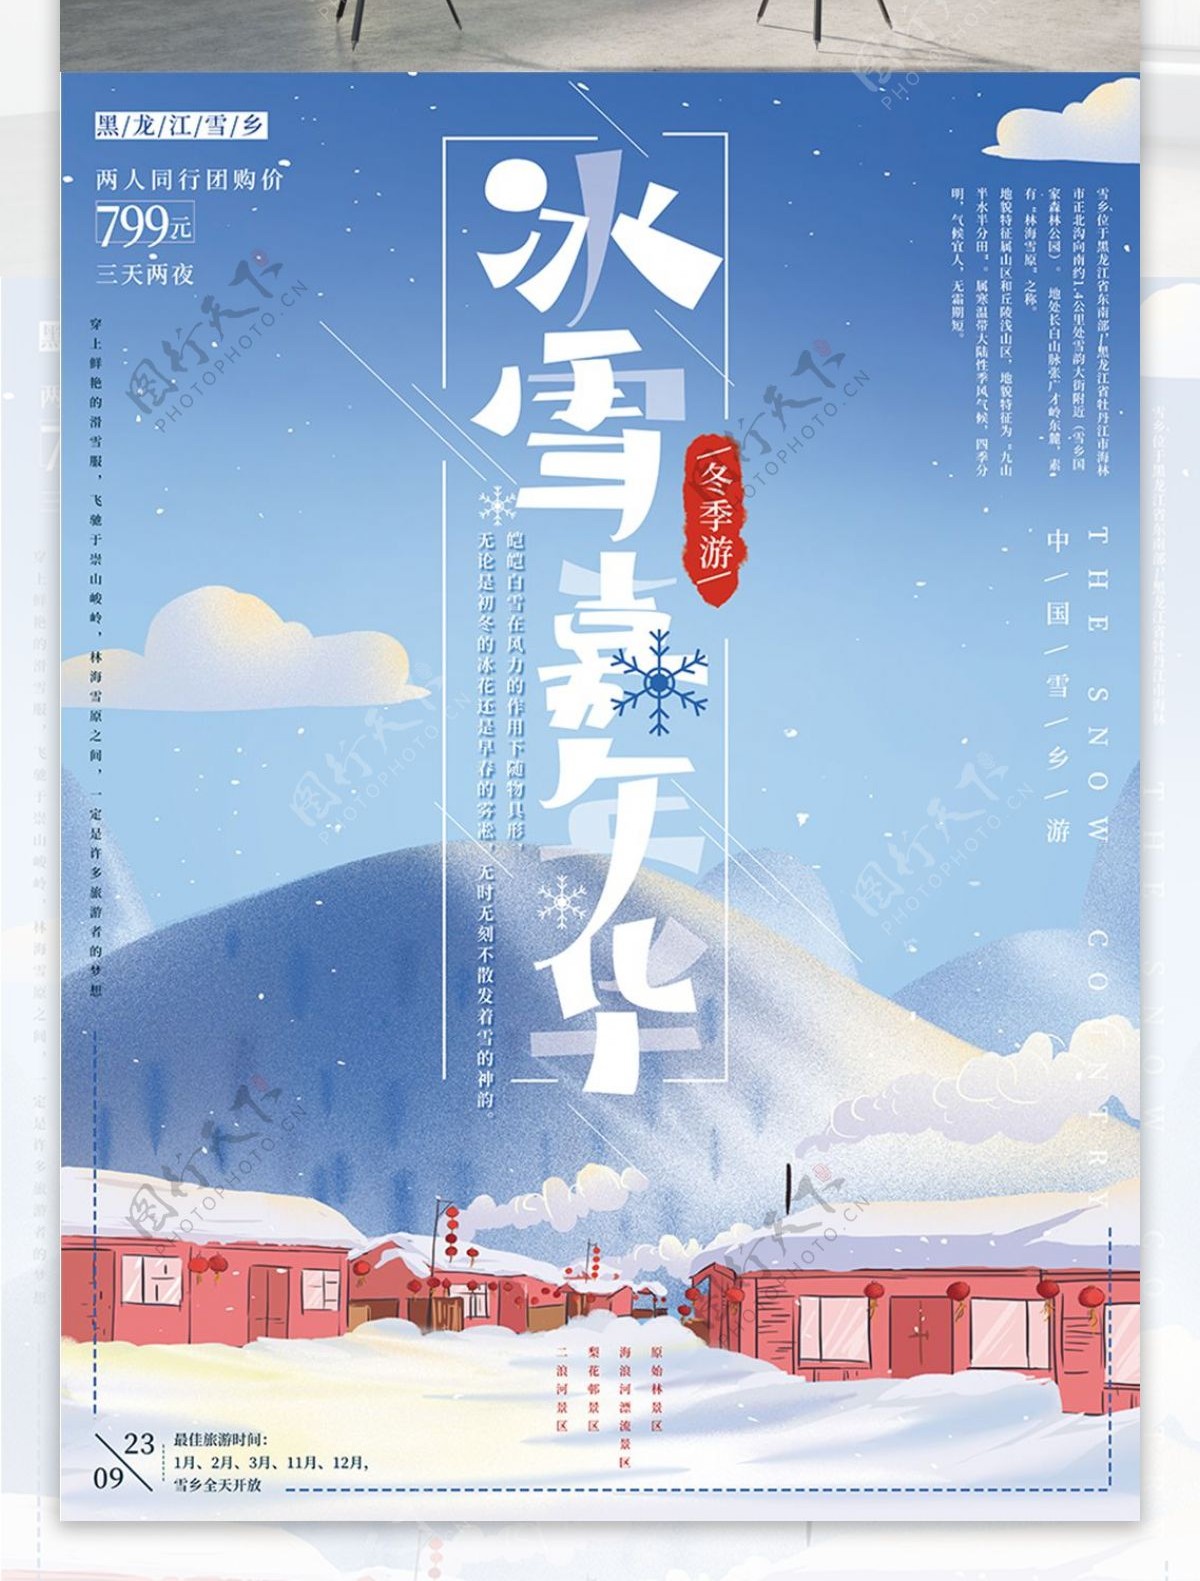 原创手绘冬季促销旅游海报